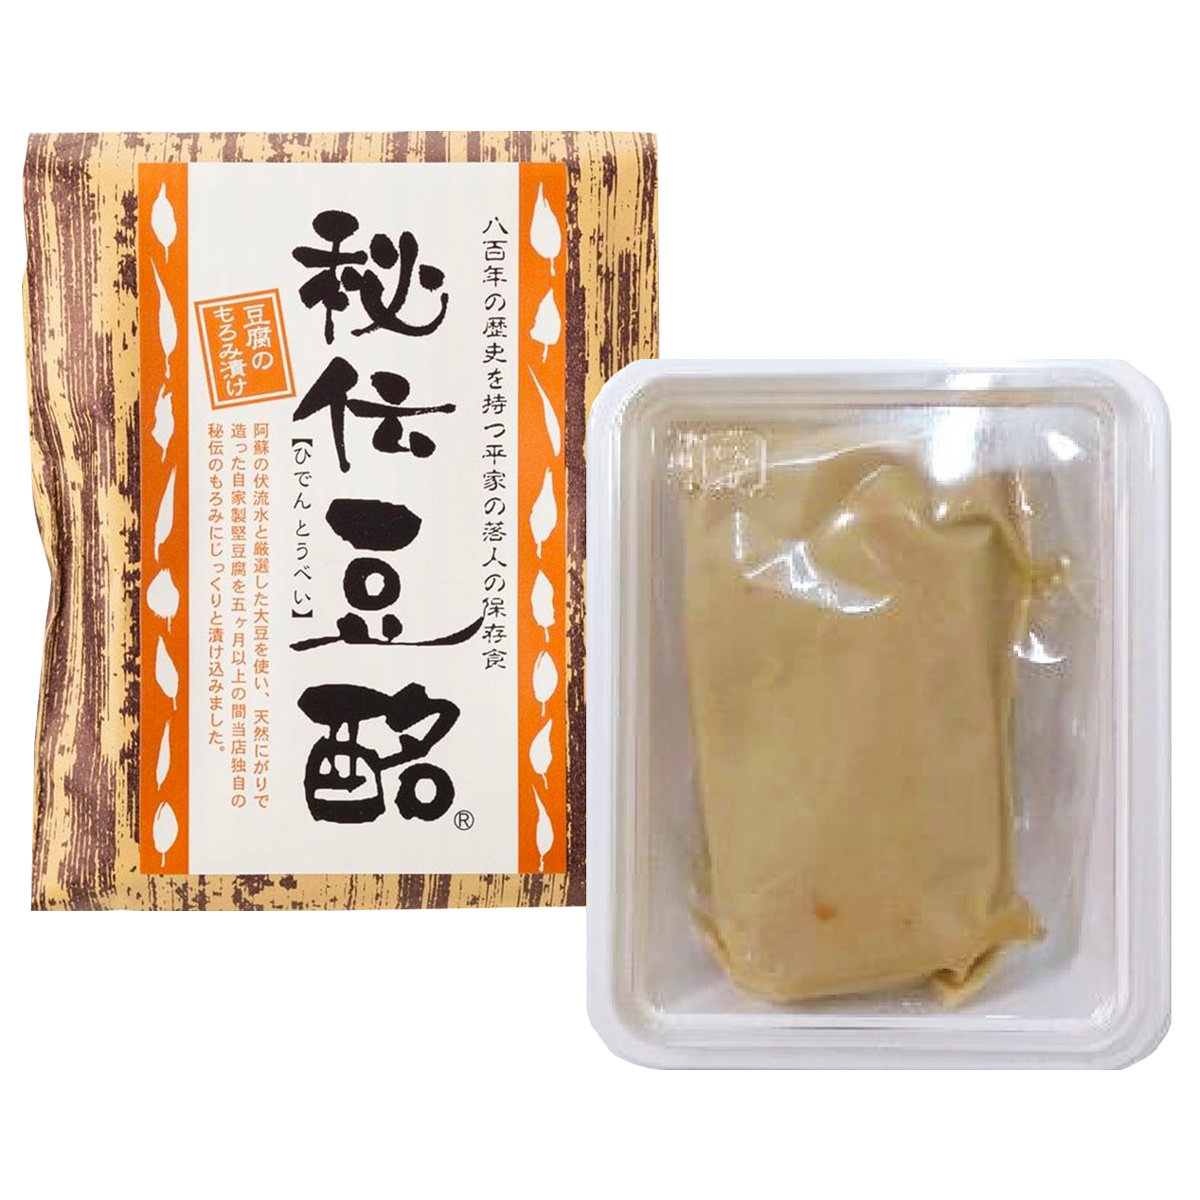 豆酩 豆腐のもろみ漬け おつまみ おかず 九州 珍味 郷土料理 もろみ漬け 発酵食品 豆腐 3個セット